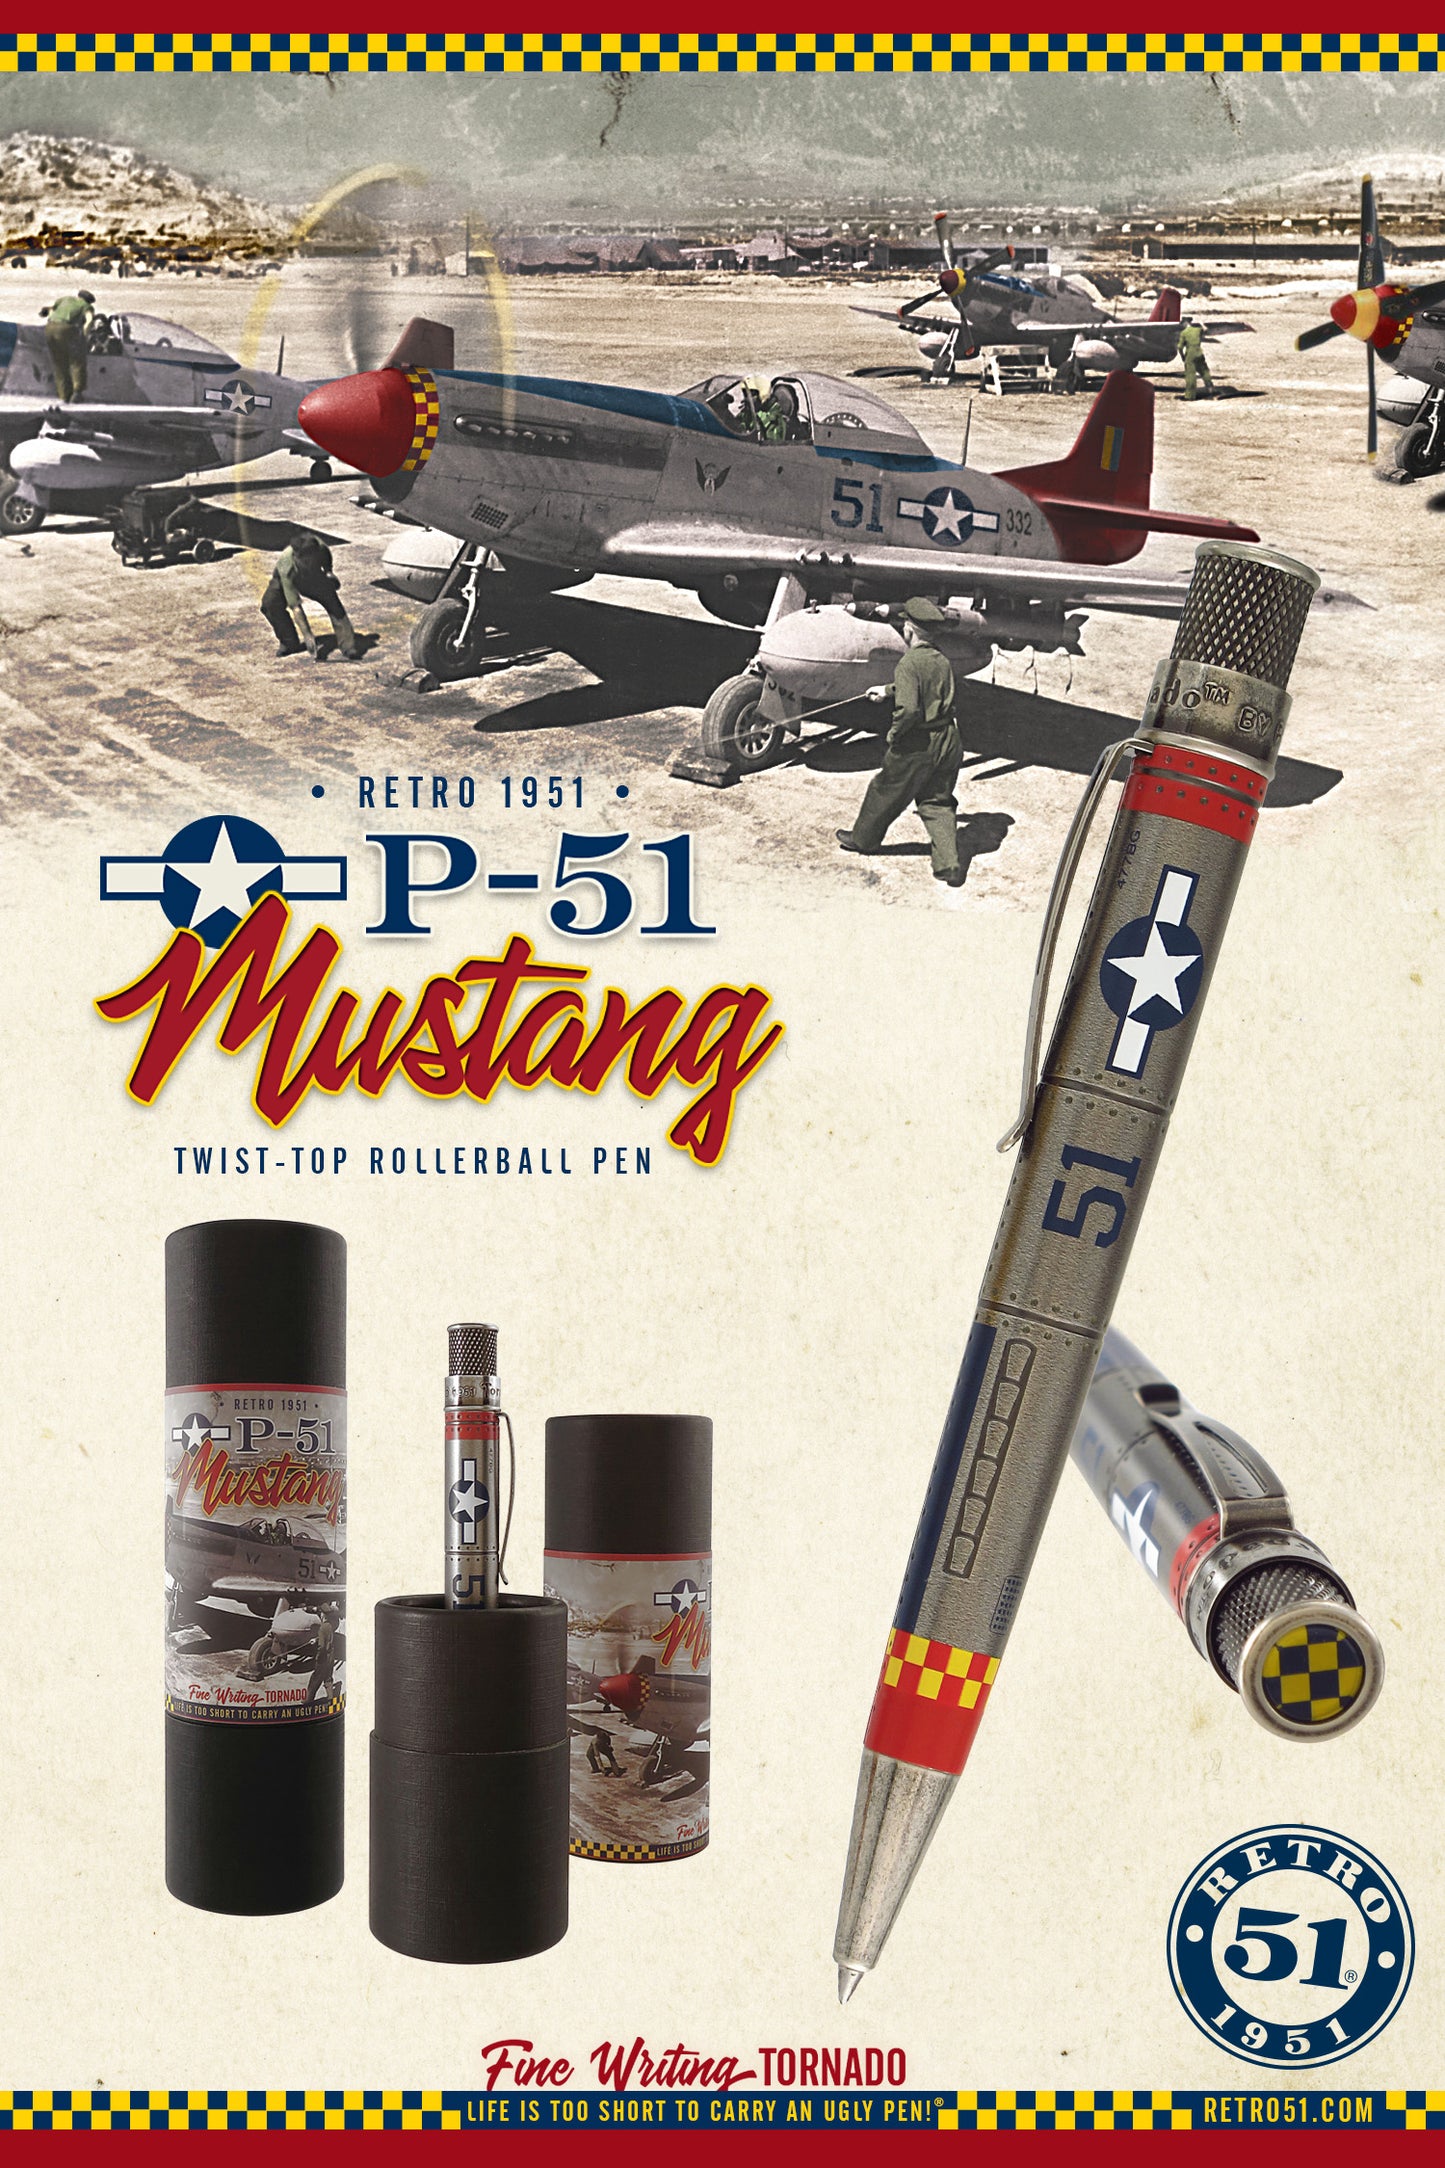 Retro 51 Tornado Vintage Metalsmith Rollerball Pen - P-51 Mustang